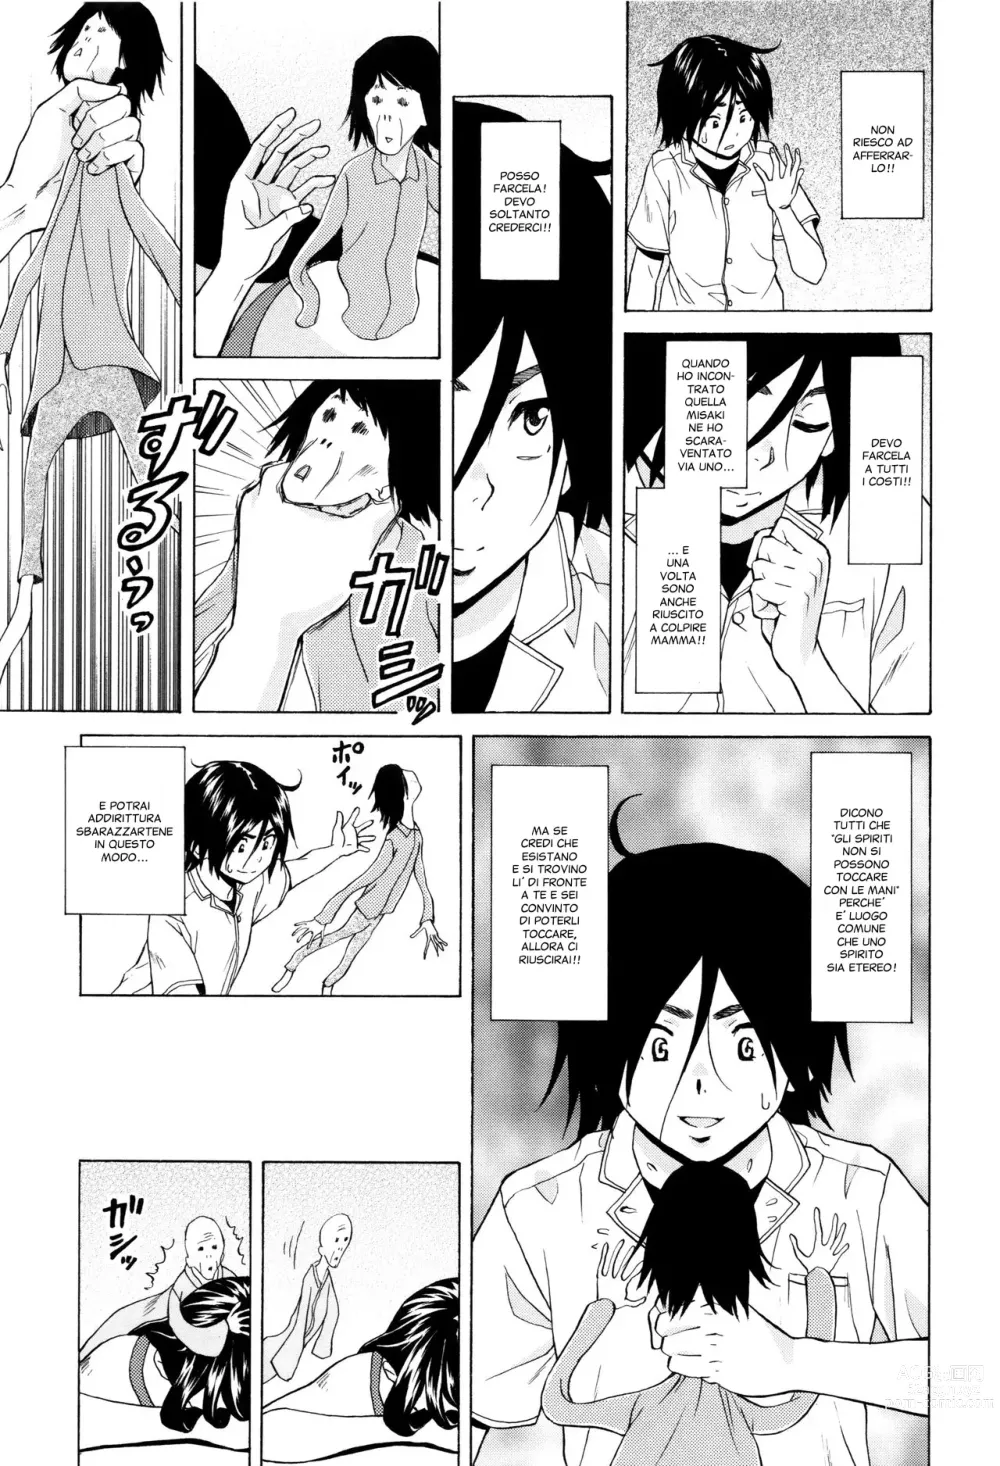 Page 195 of manga Segreti, Suicidi e Sorelle (decensored)